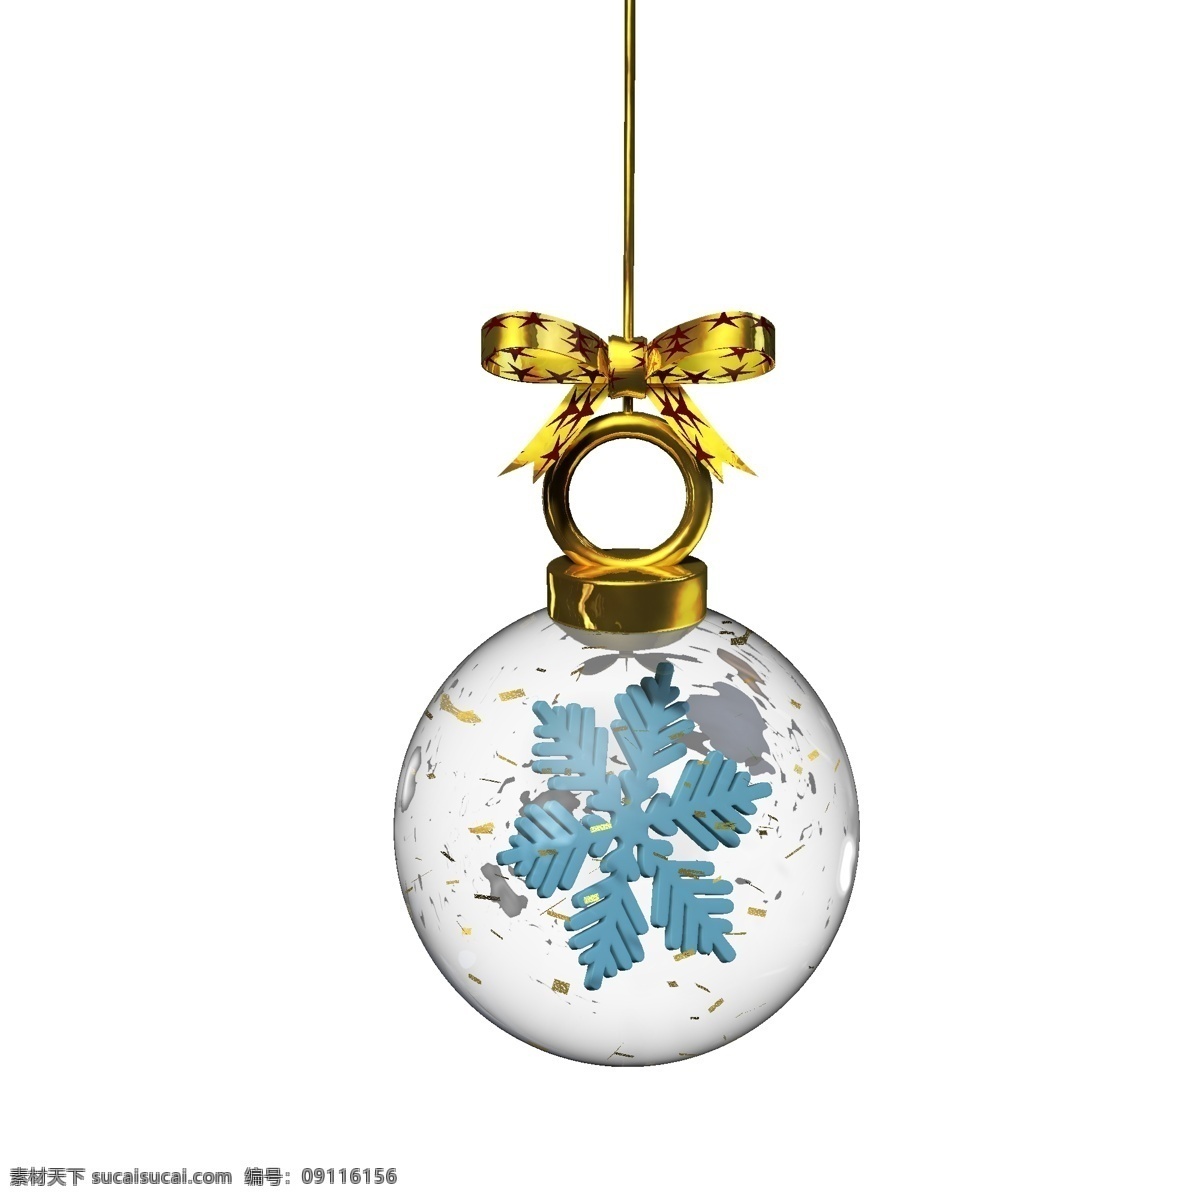 金色 圣诞 元素 水晶 玻璃球 挂件 蓝色 雪花 彩色 卡通 圣诞元素